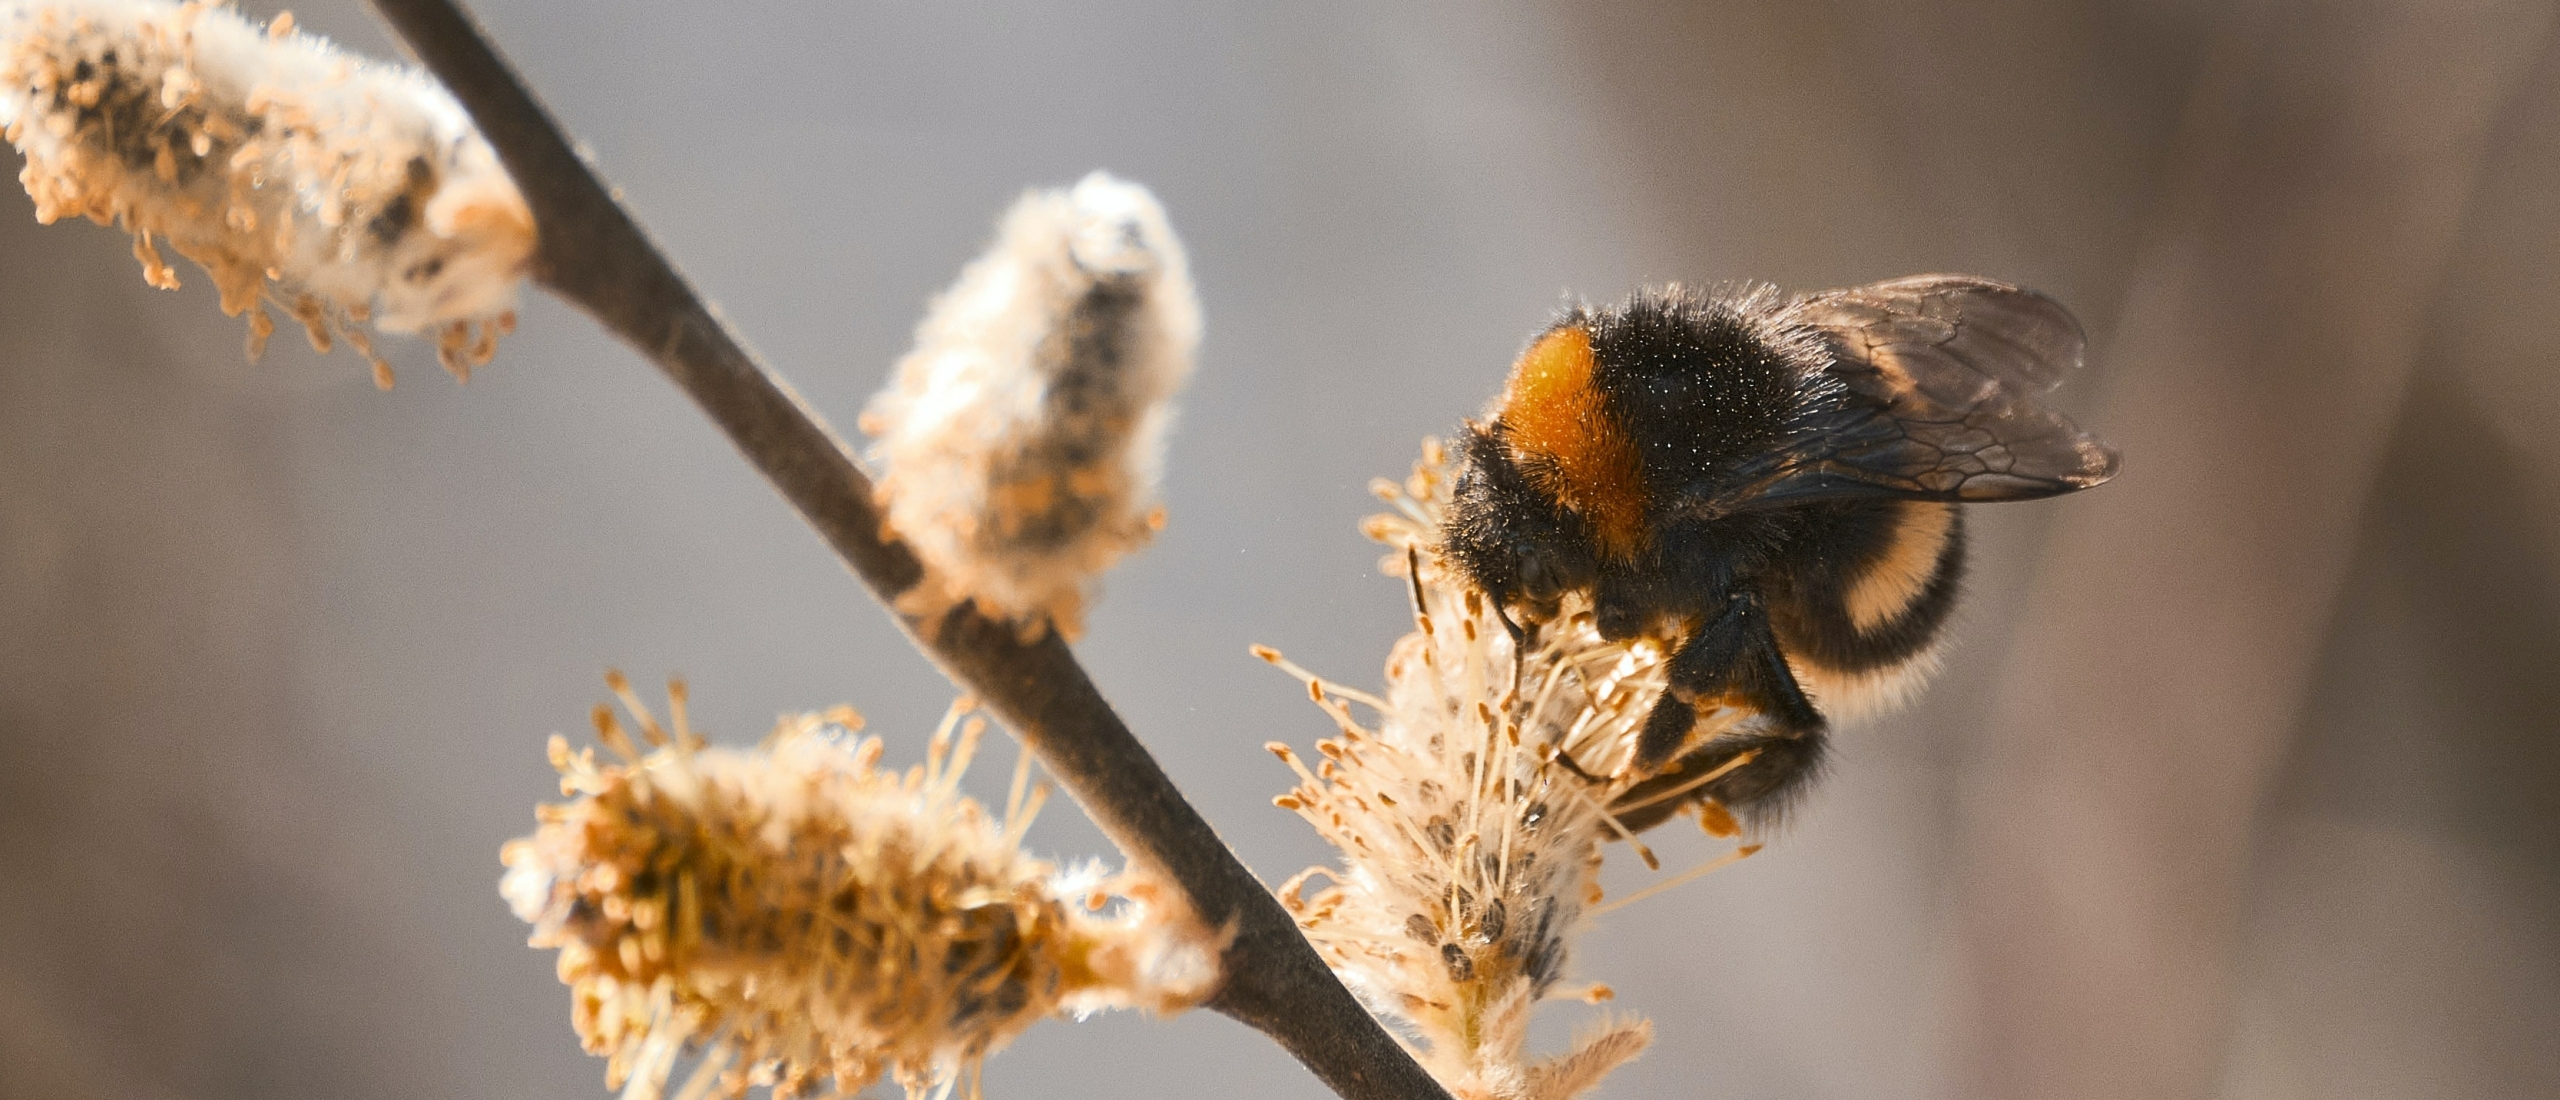 Bijenpollen kopen? Alle gezondheidsvoordelen van bijenpollen waar je blij van wordt!